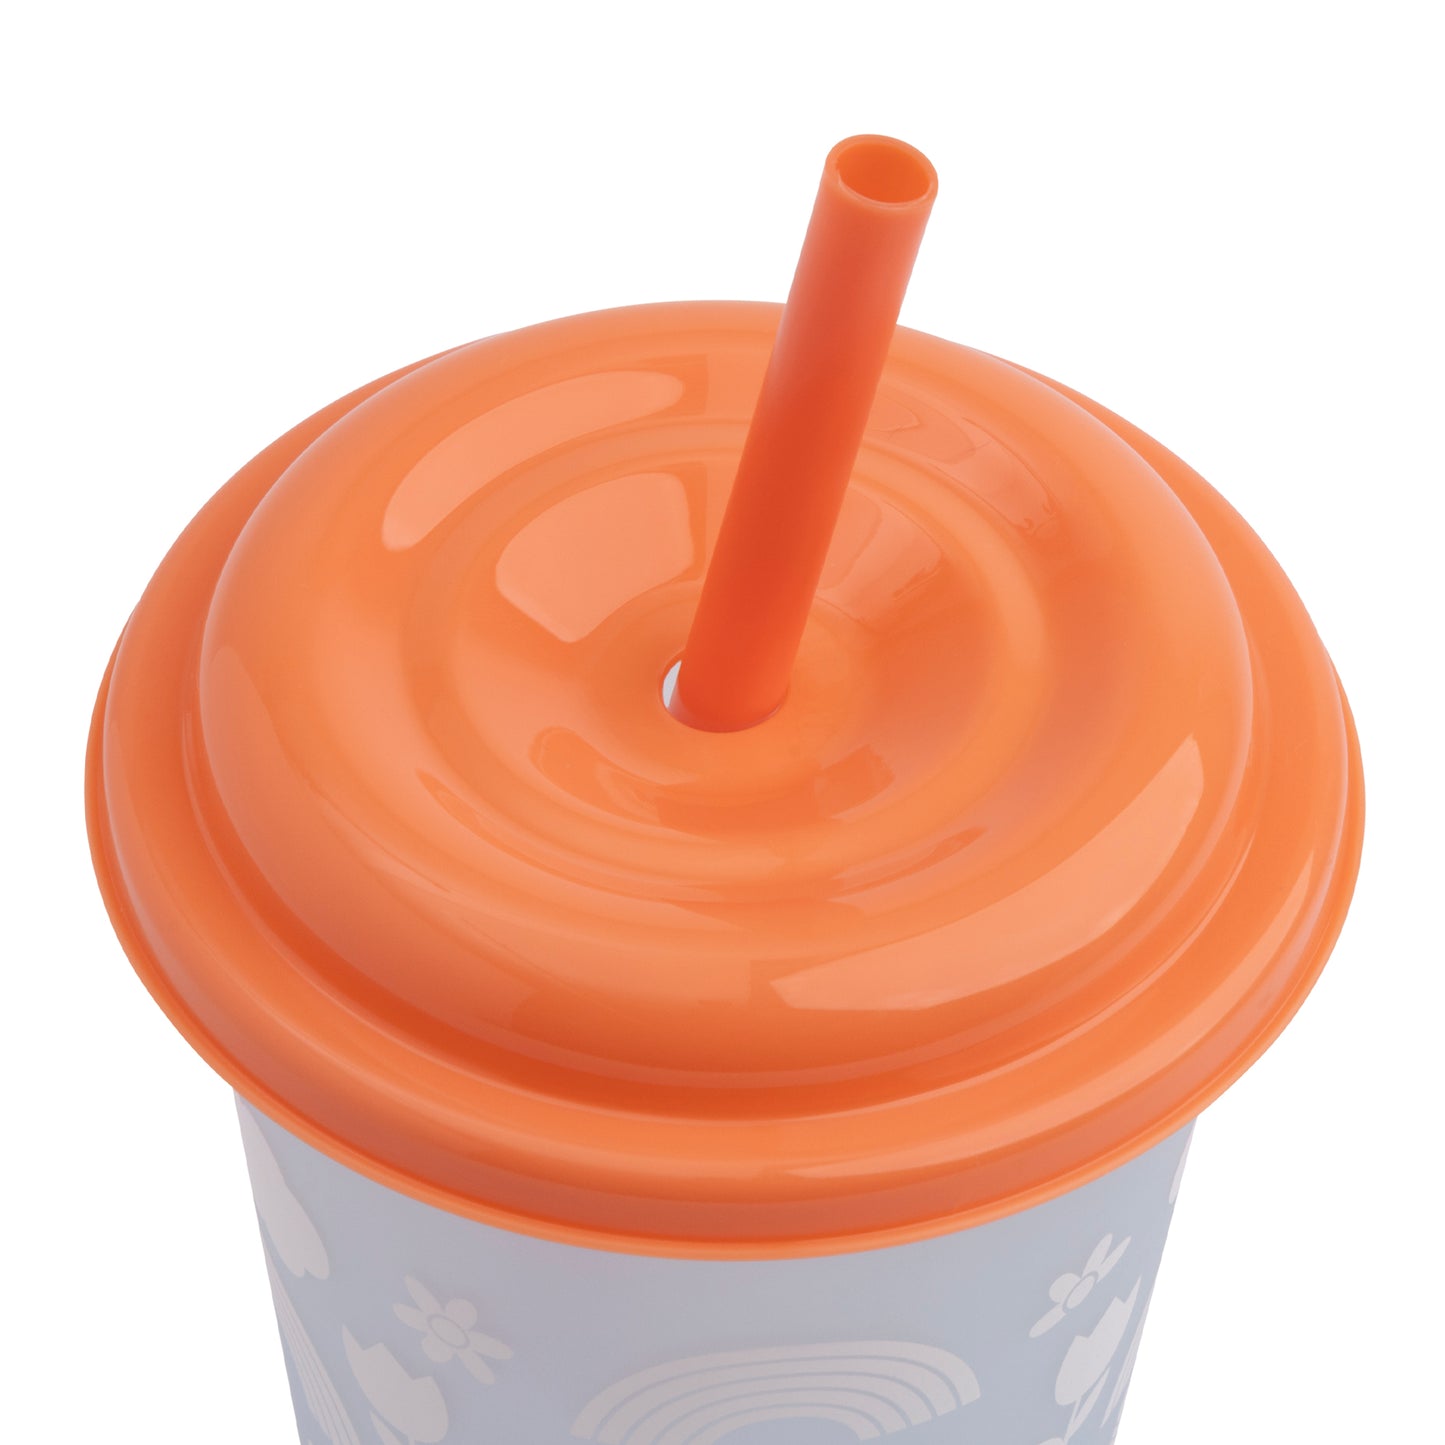 
                  
                    6-Piece Kid's Tween Color-Changing Cup Set
                  
                